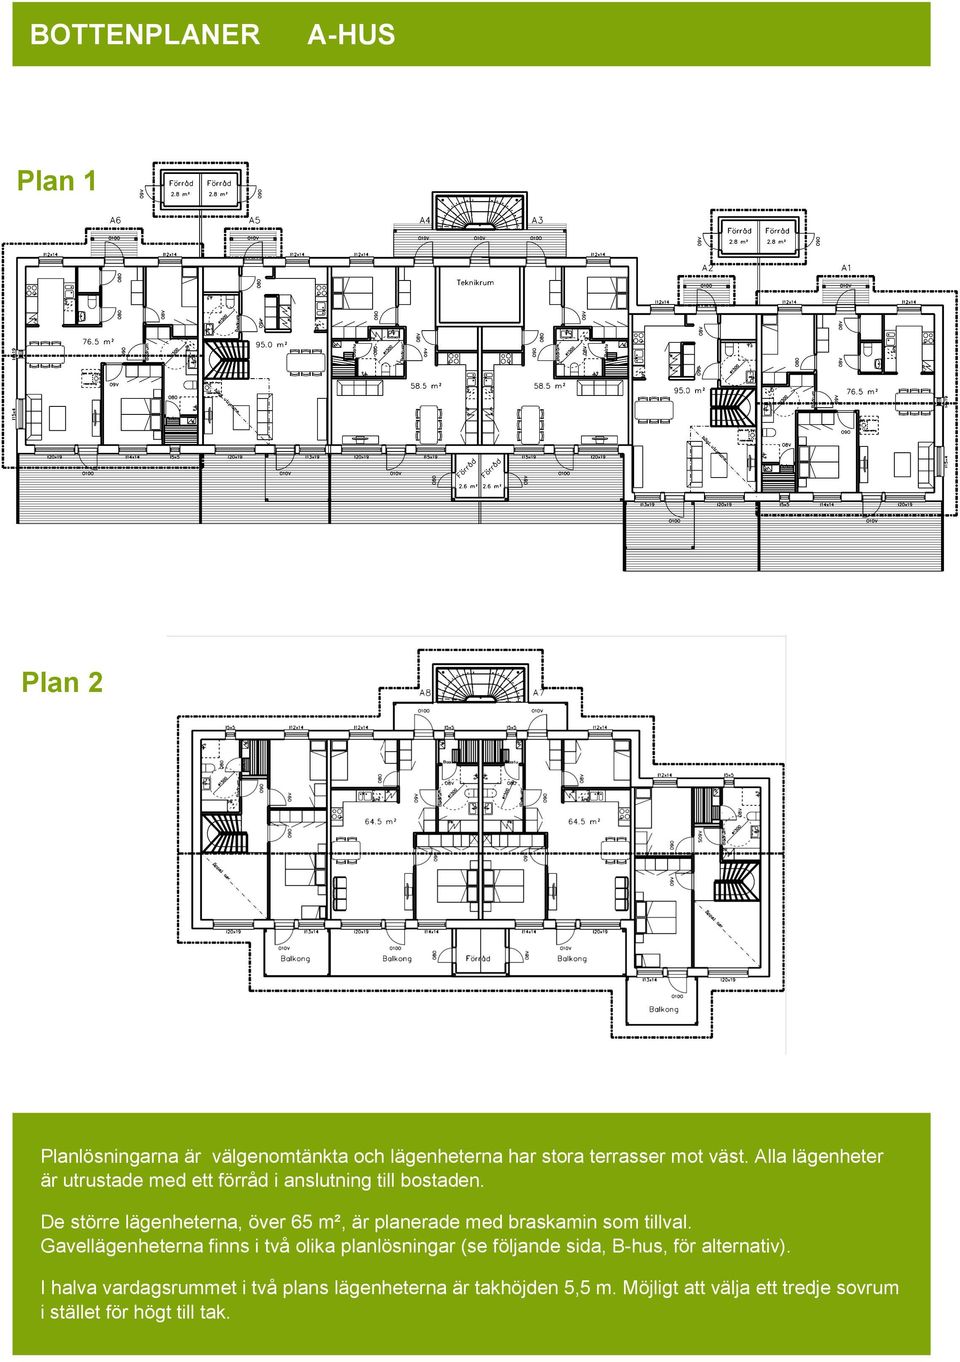 De större lägenheterna, över 65 m², är planerade med braskamin som tillval.